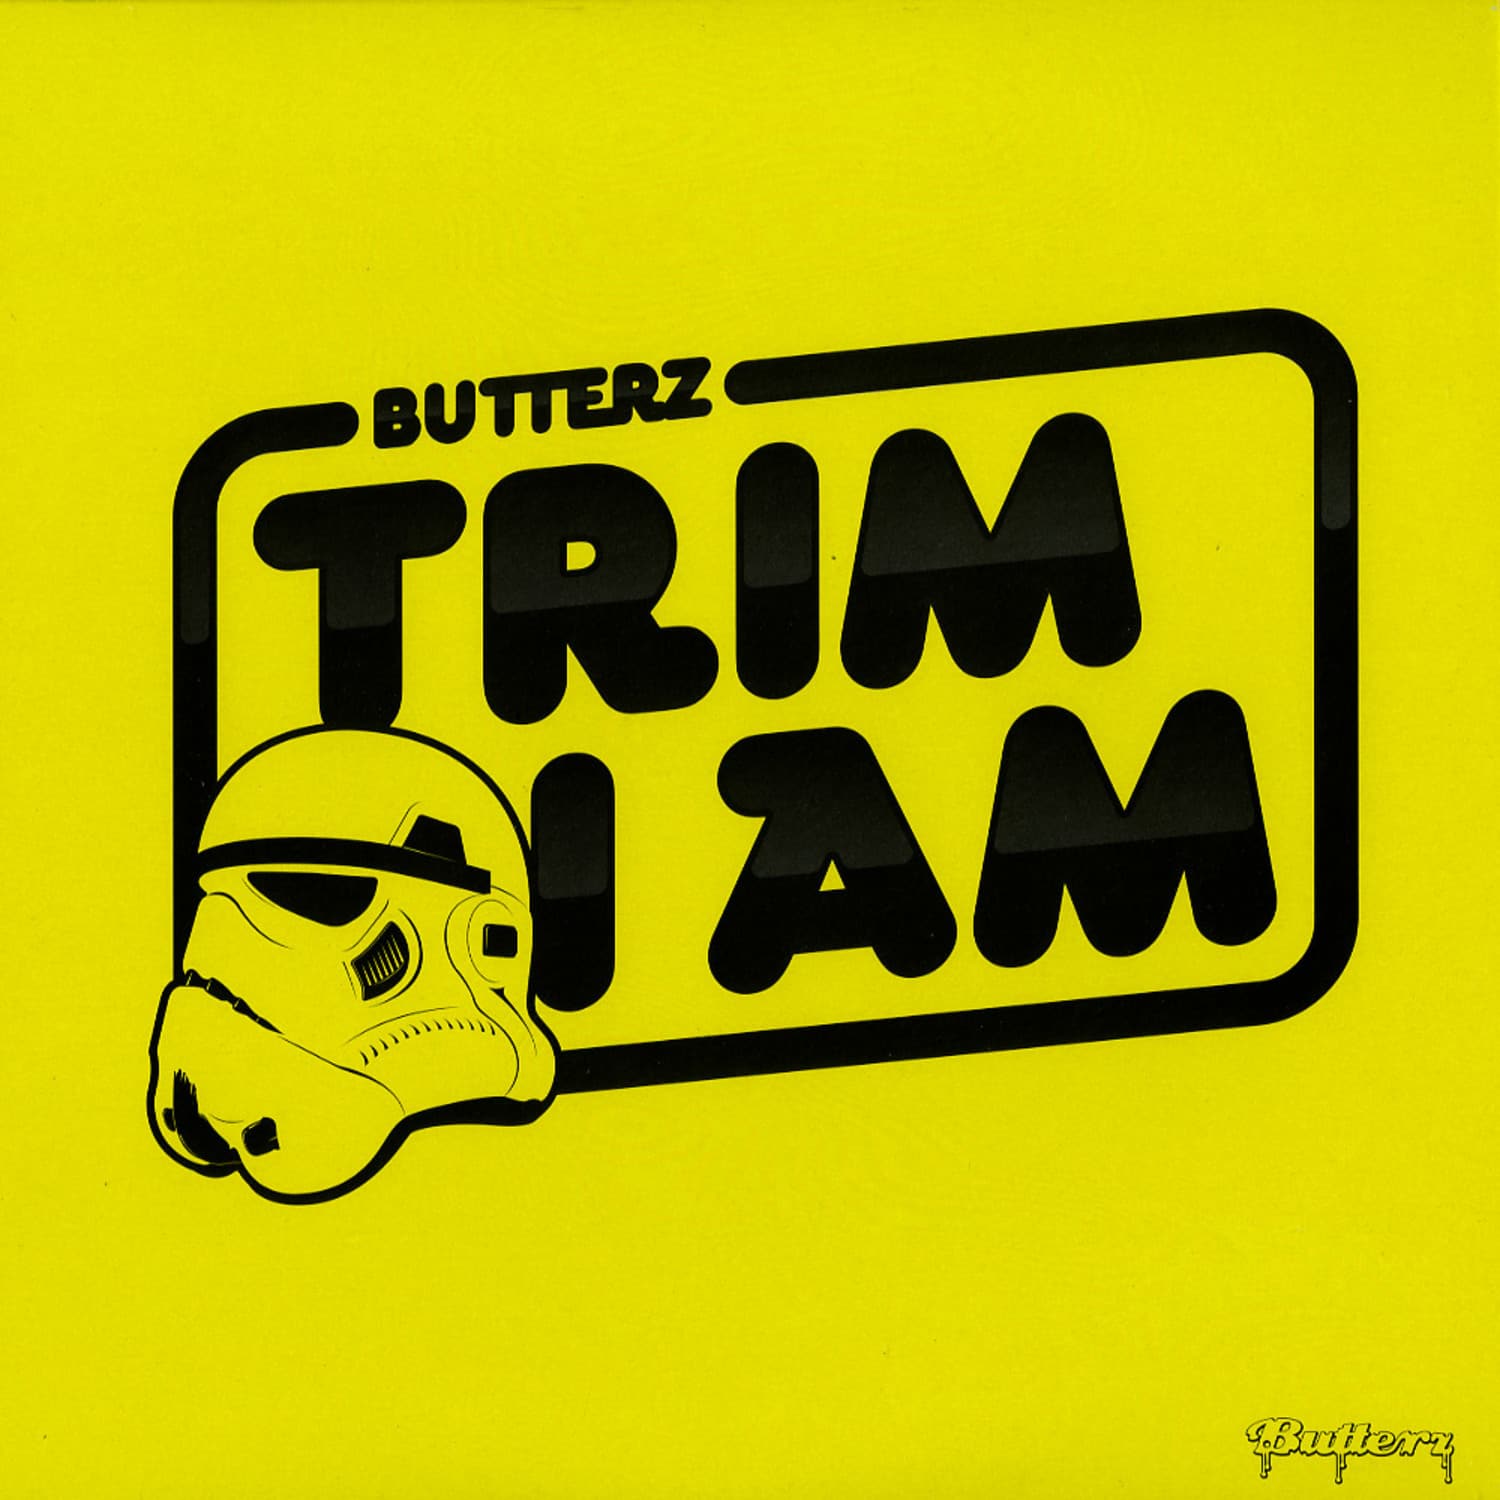 Trim - I AM 